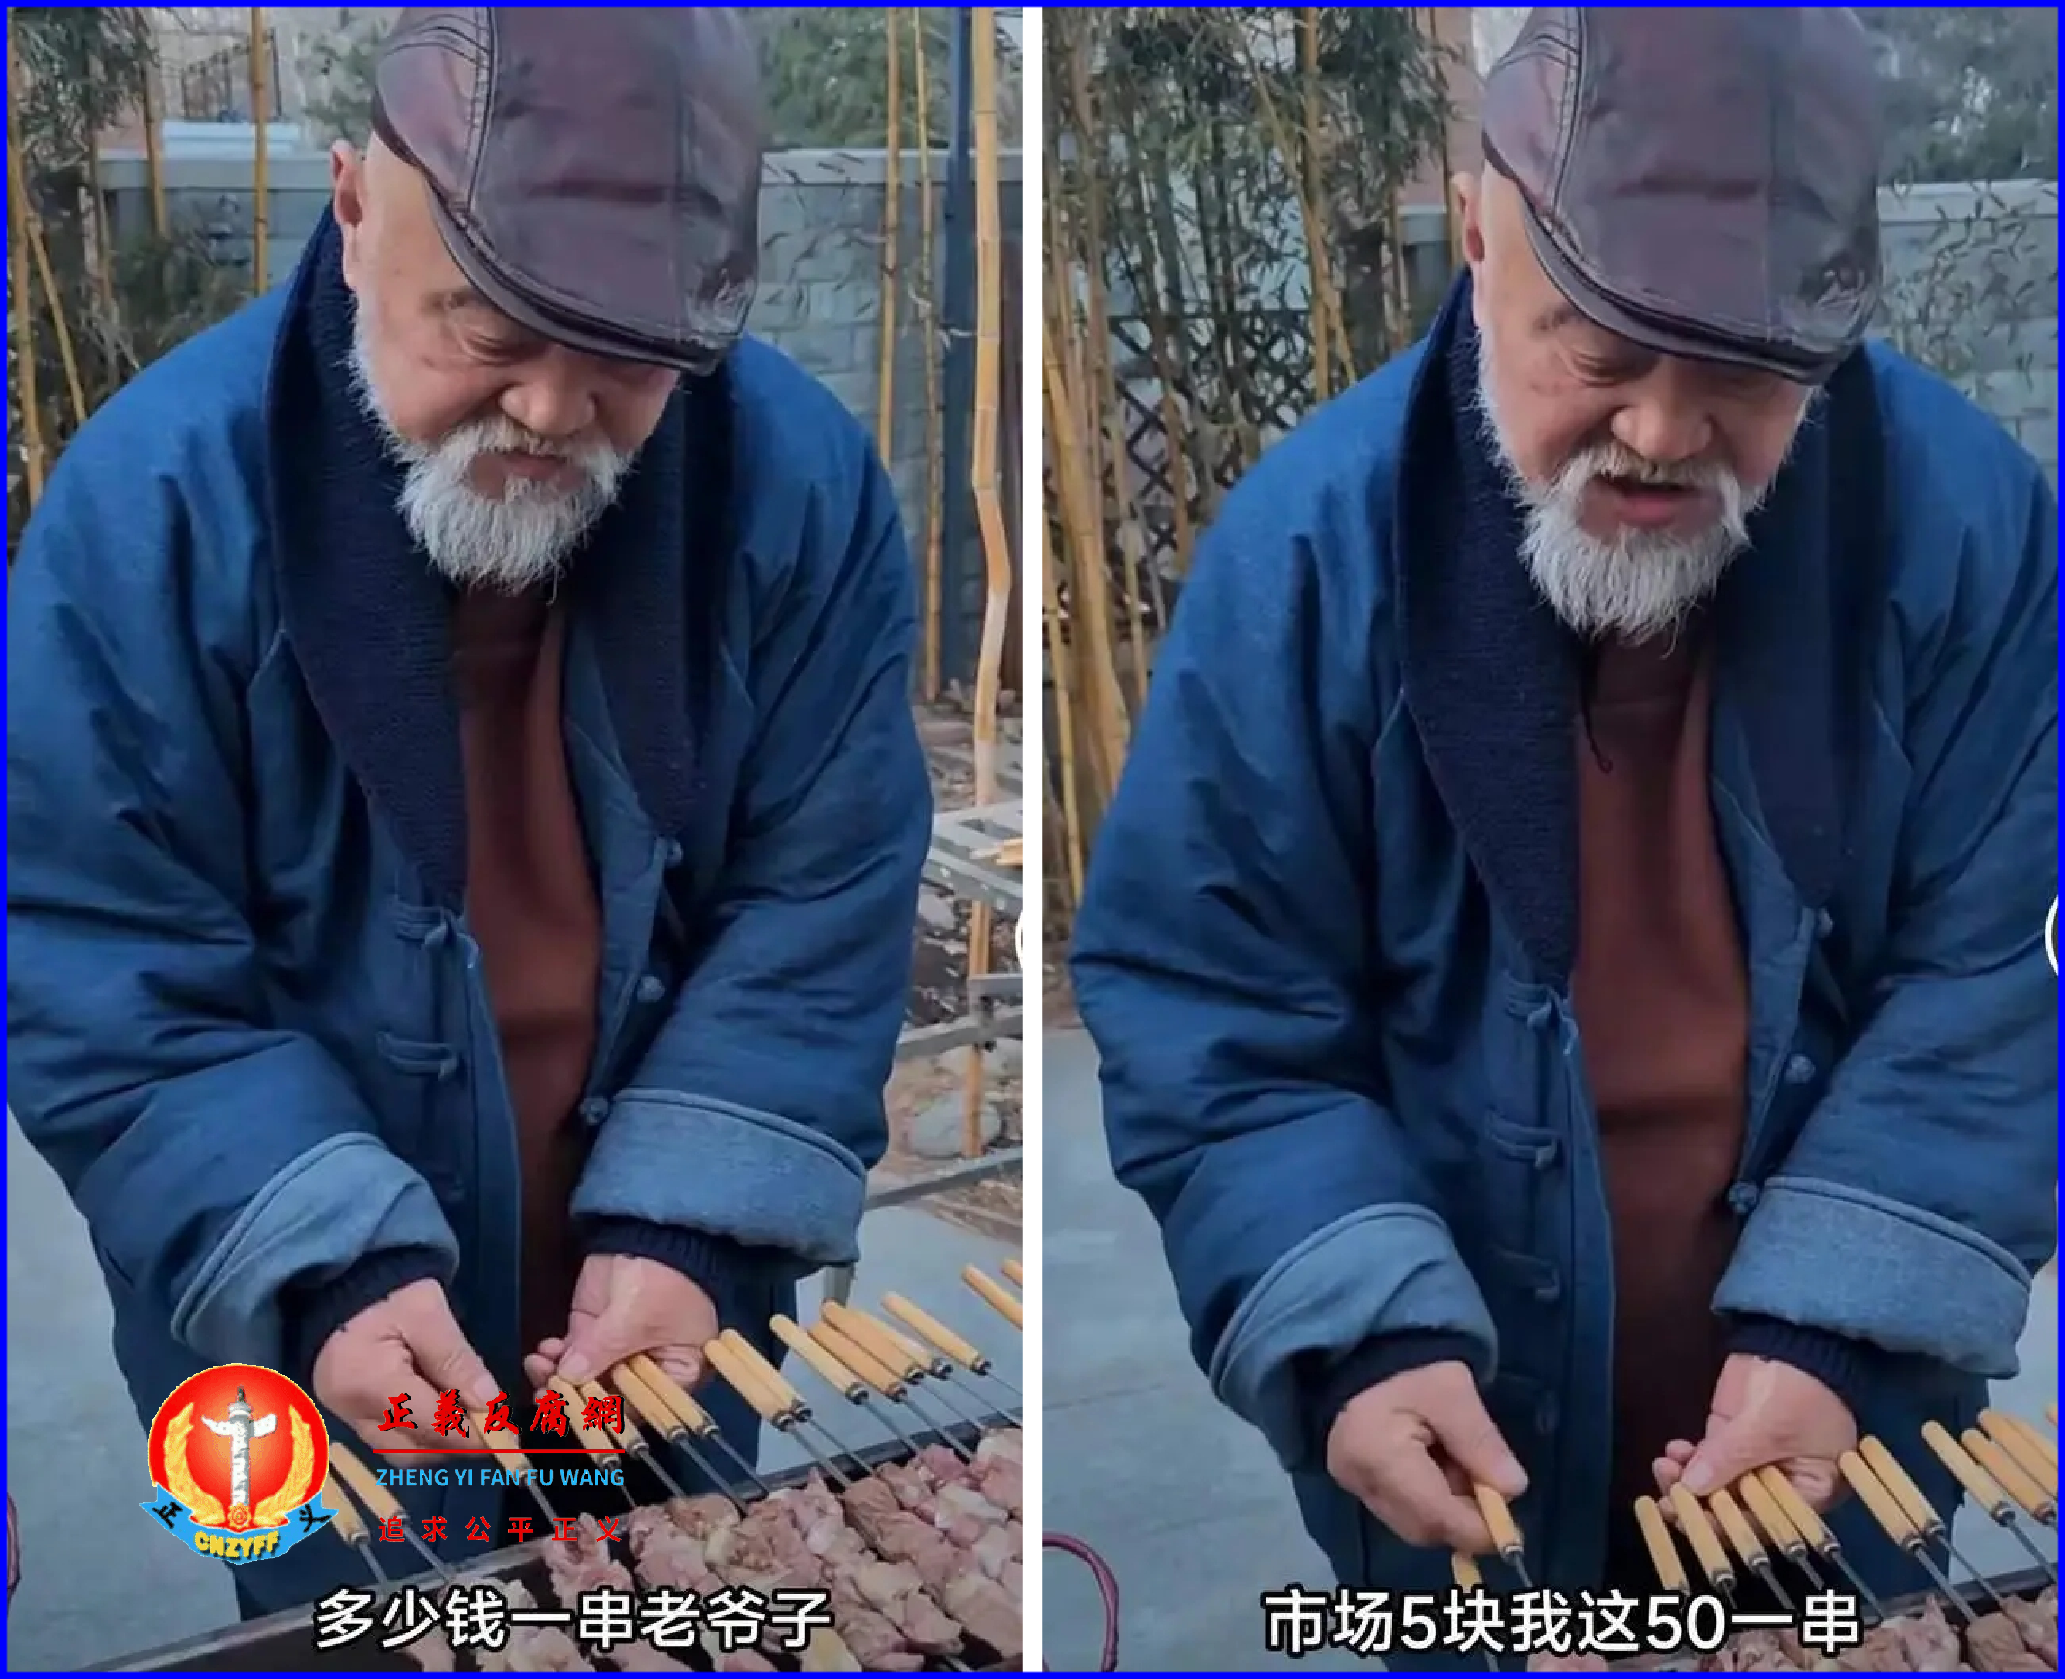 老戏骨李琦无戏拍，在北京摆摊卖烤串。一边介绍一边给自己竖起大拇指说：“多少钱一串，老爷子？”、“市场5块，我这50块钱一串。”.png